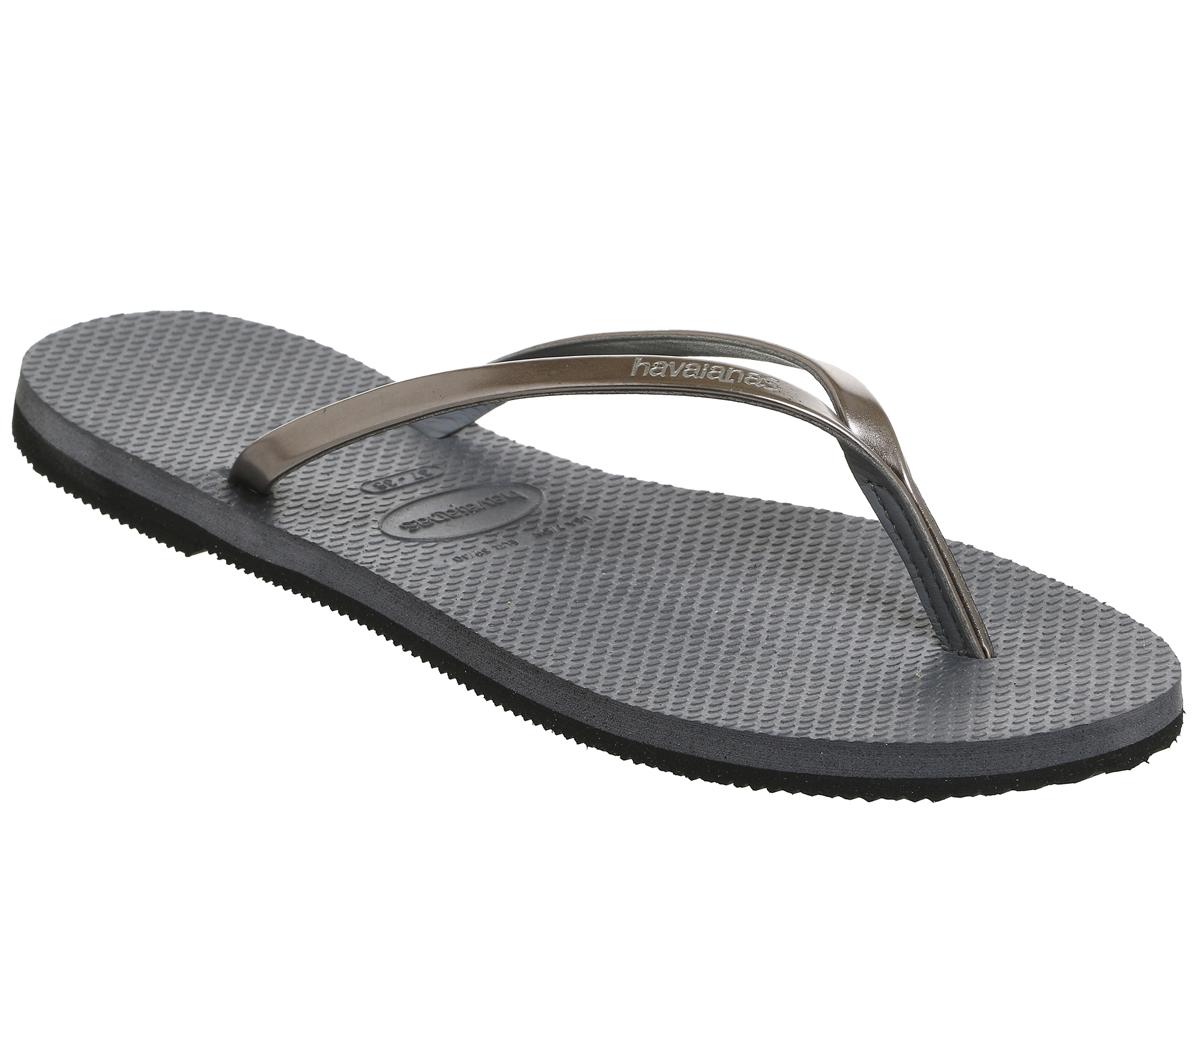 Havaianas Slim You Metallic Flip Flops Steel Grey - Sandals